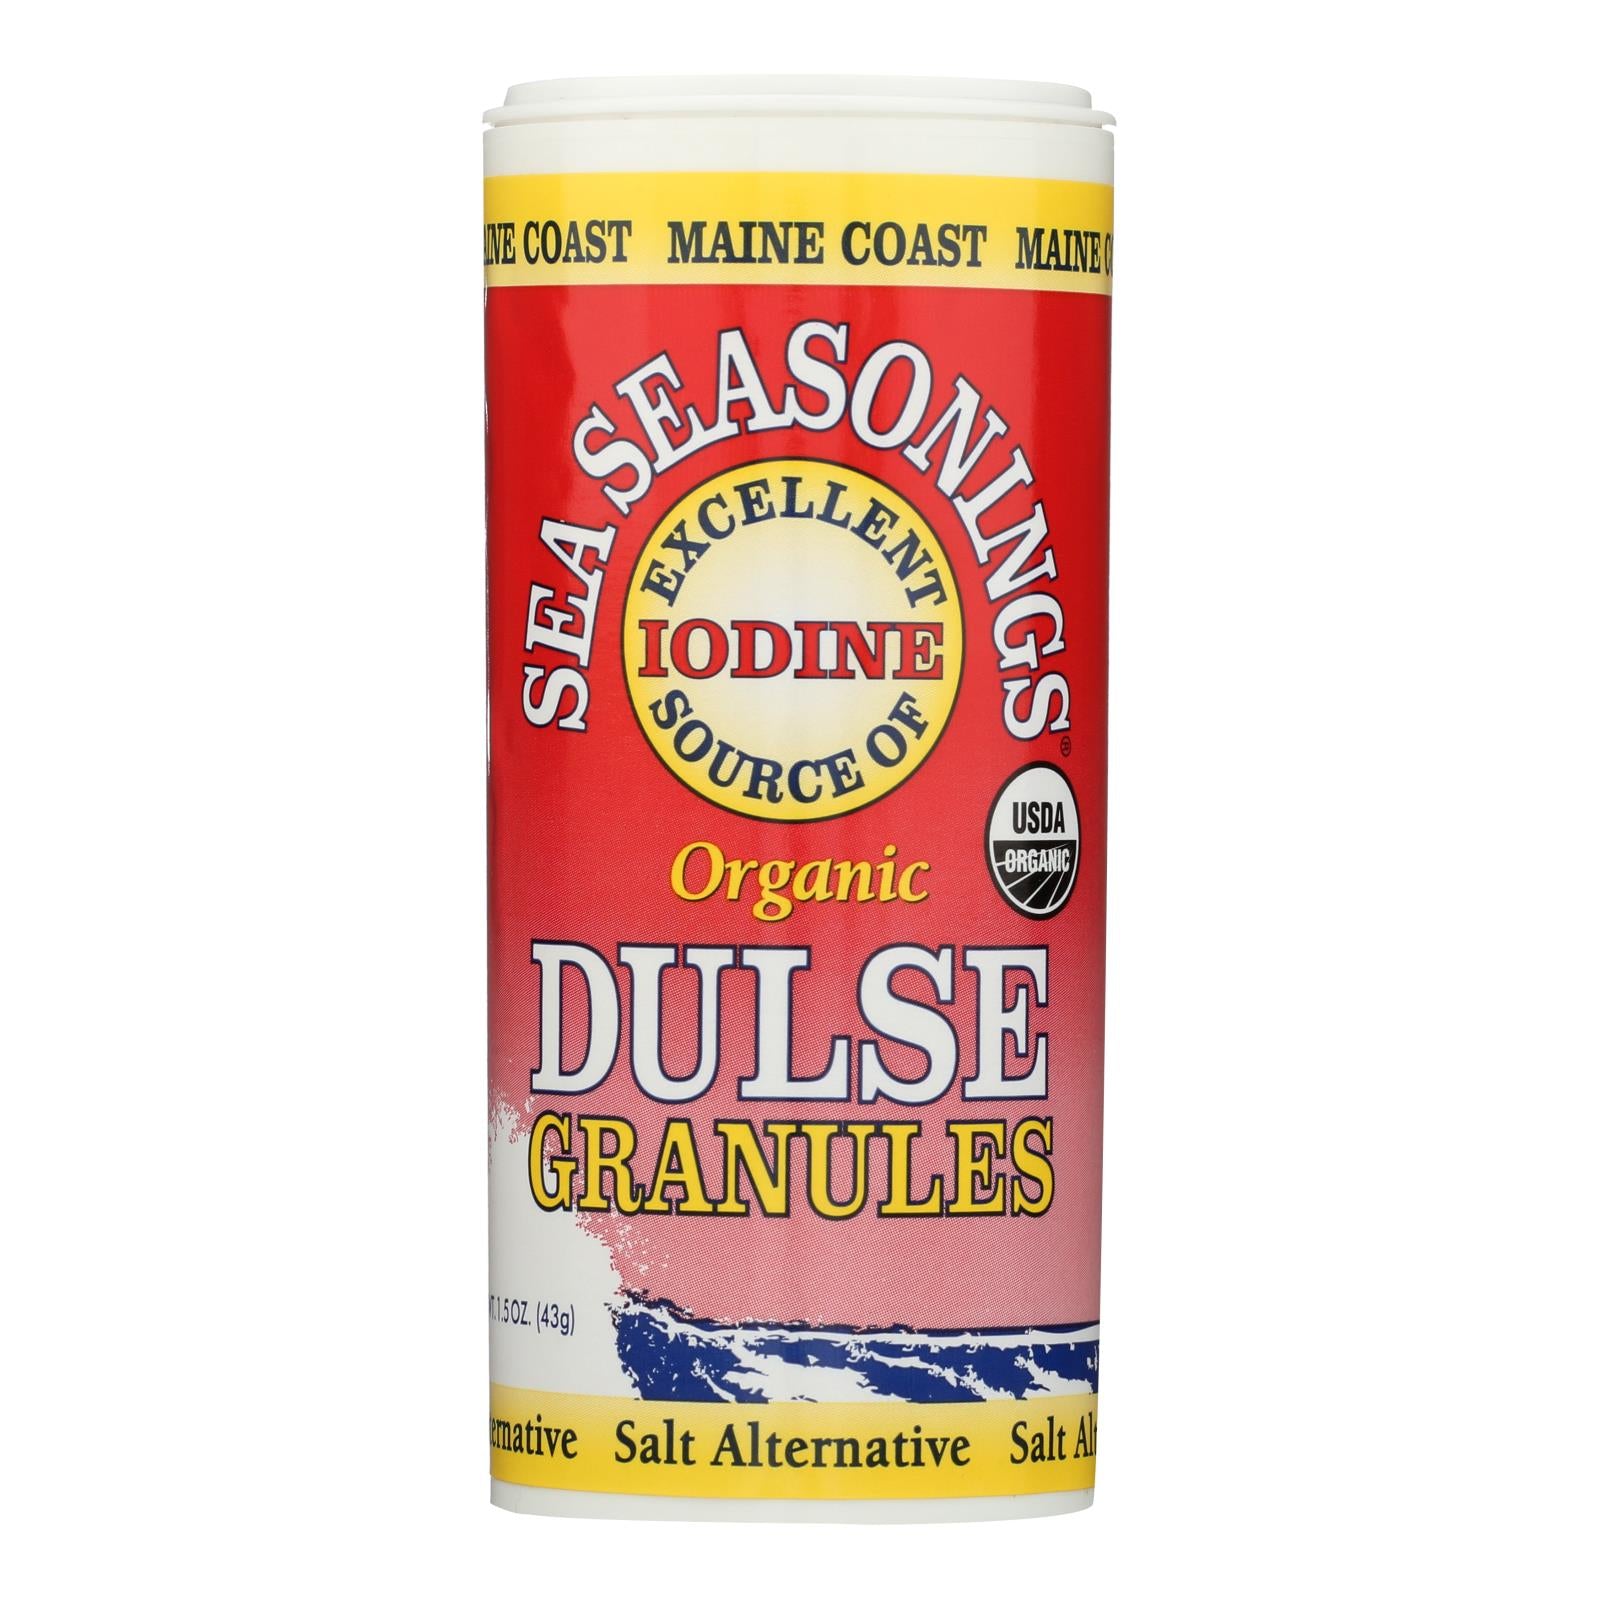 Maine Coast Organic Sea Seasonings - Dulse Granules - 1.5 oz Shaker